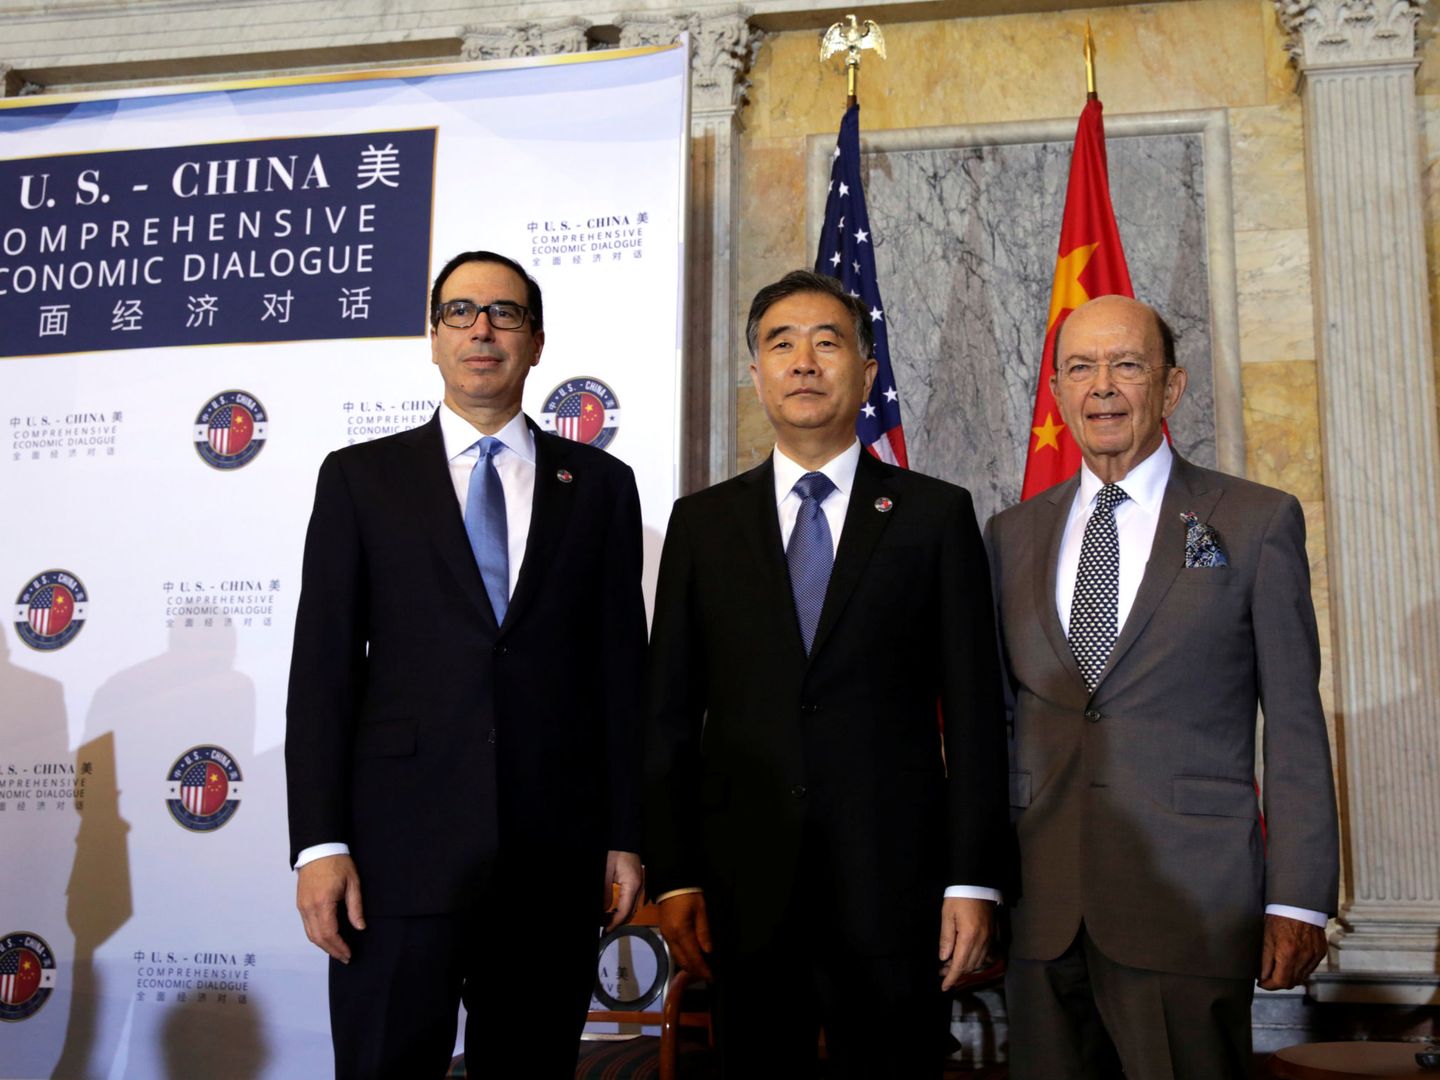 El secretario del Tesoro de EEUU Steve Mnuchin, el viceprimer ministro chino Wang Yang y el secretario de Comercio estadounidense Wilbur Ross, durante una cumbre económica bilateral en Washington, en julio de 2017. (Reuters)